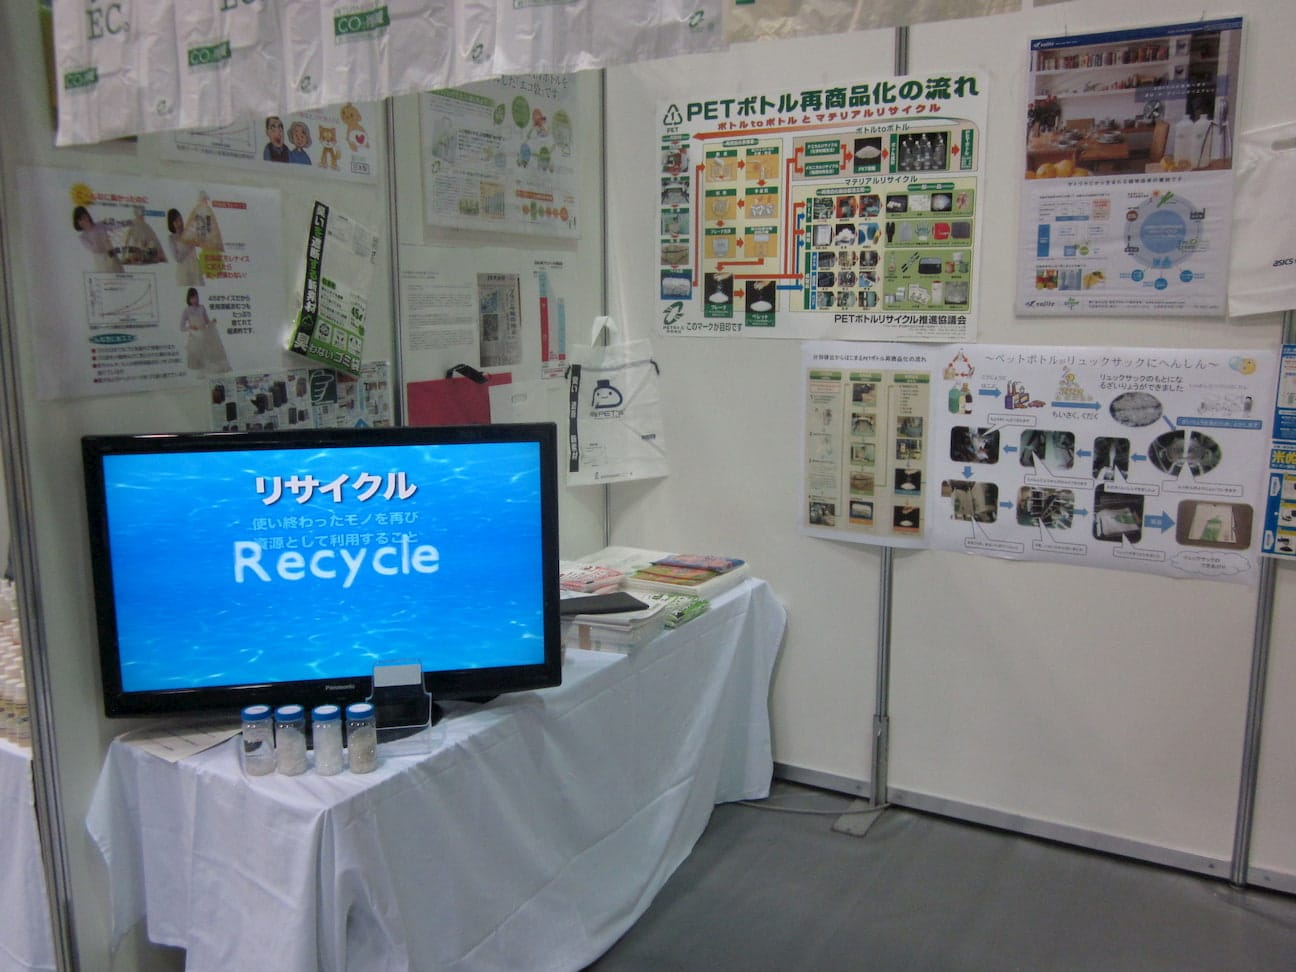 リサイクルとプラスチックごみ分別回収の啓発活動